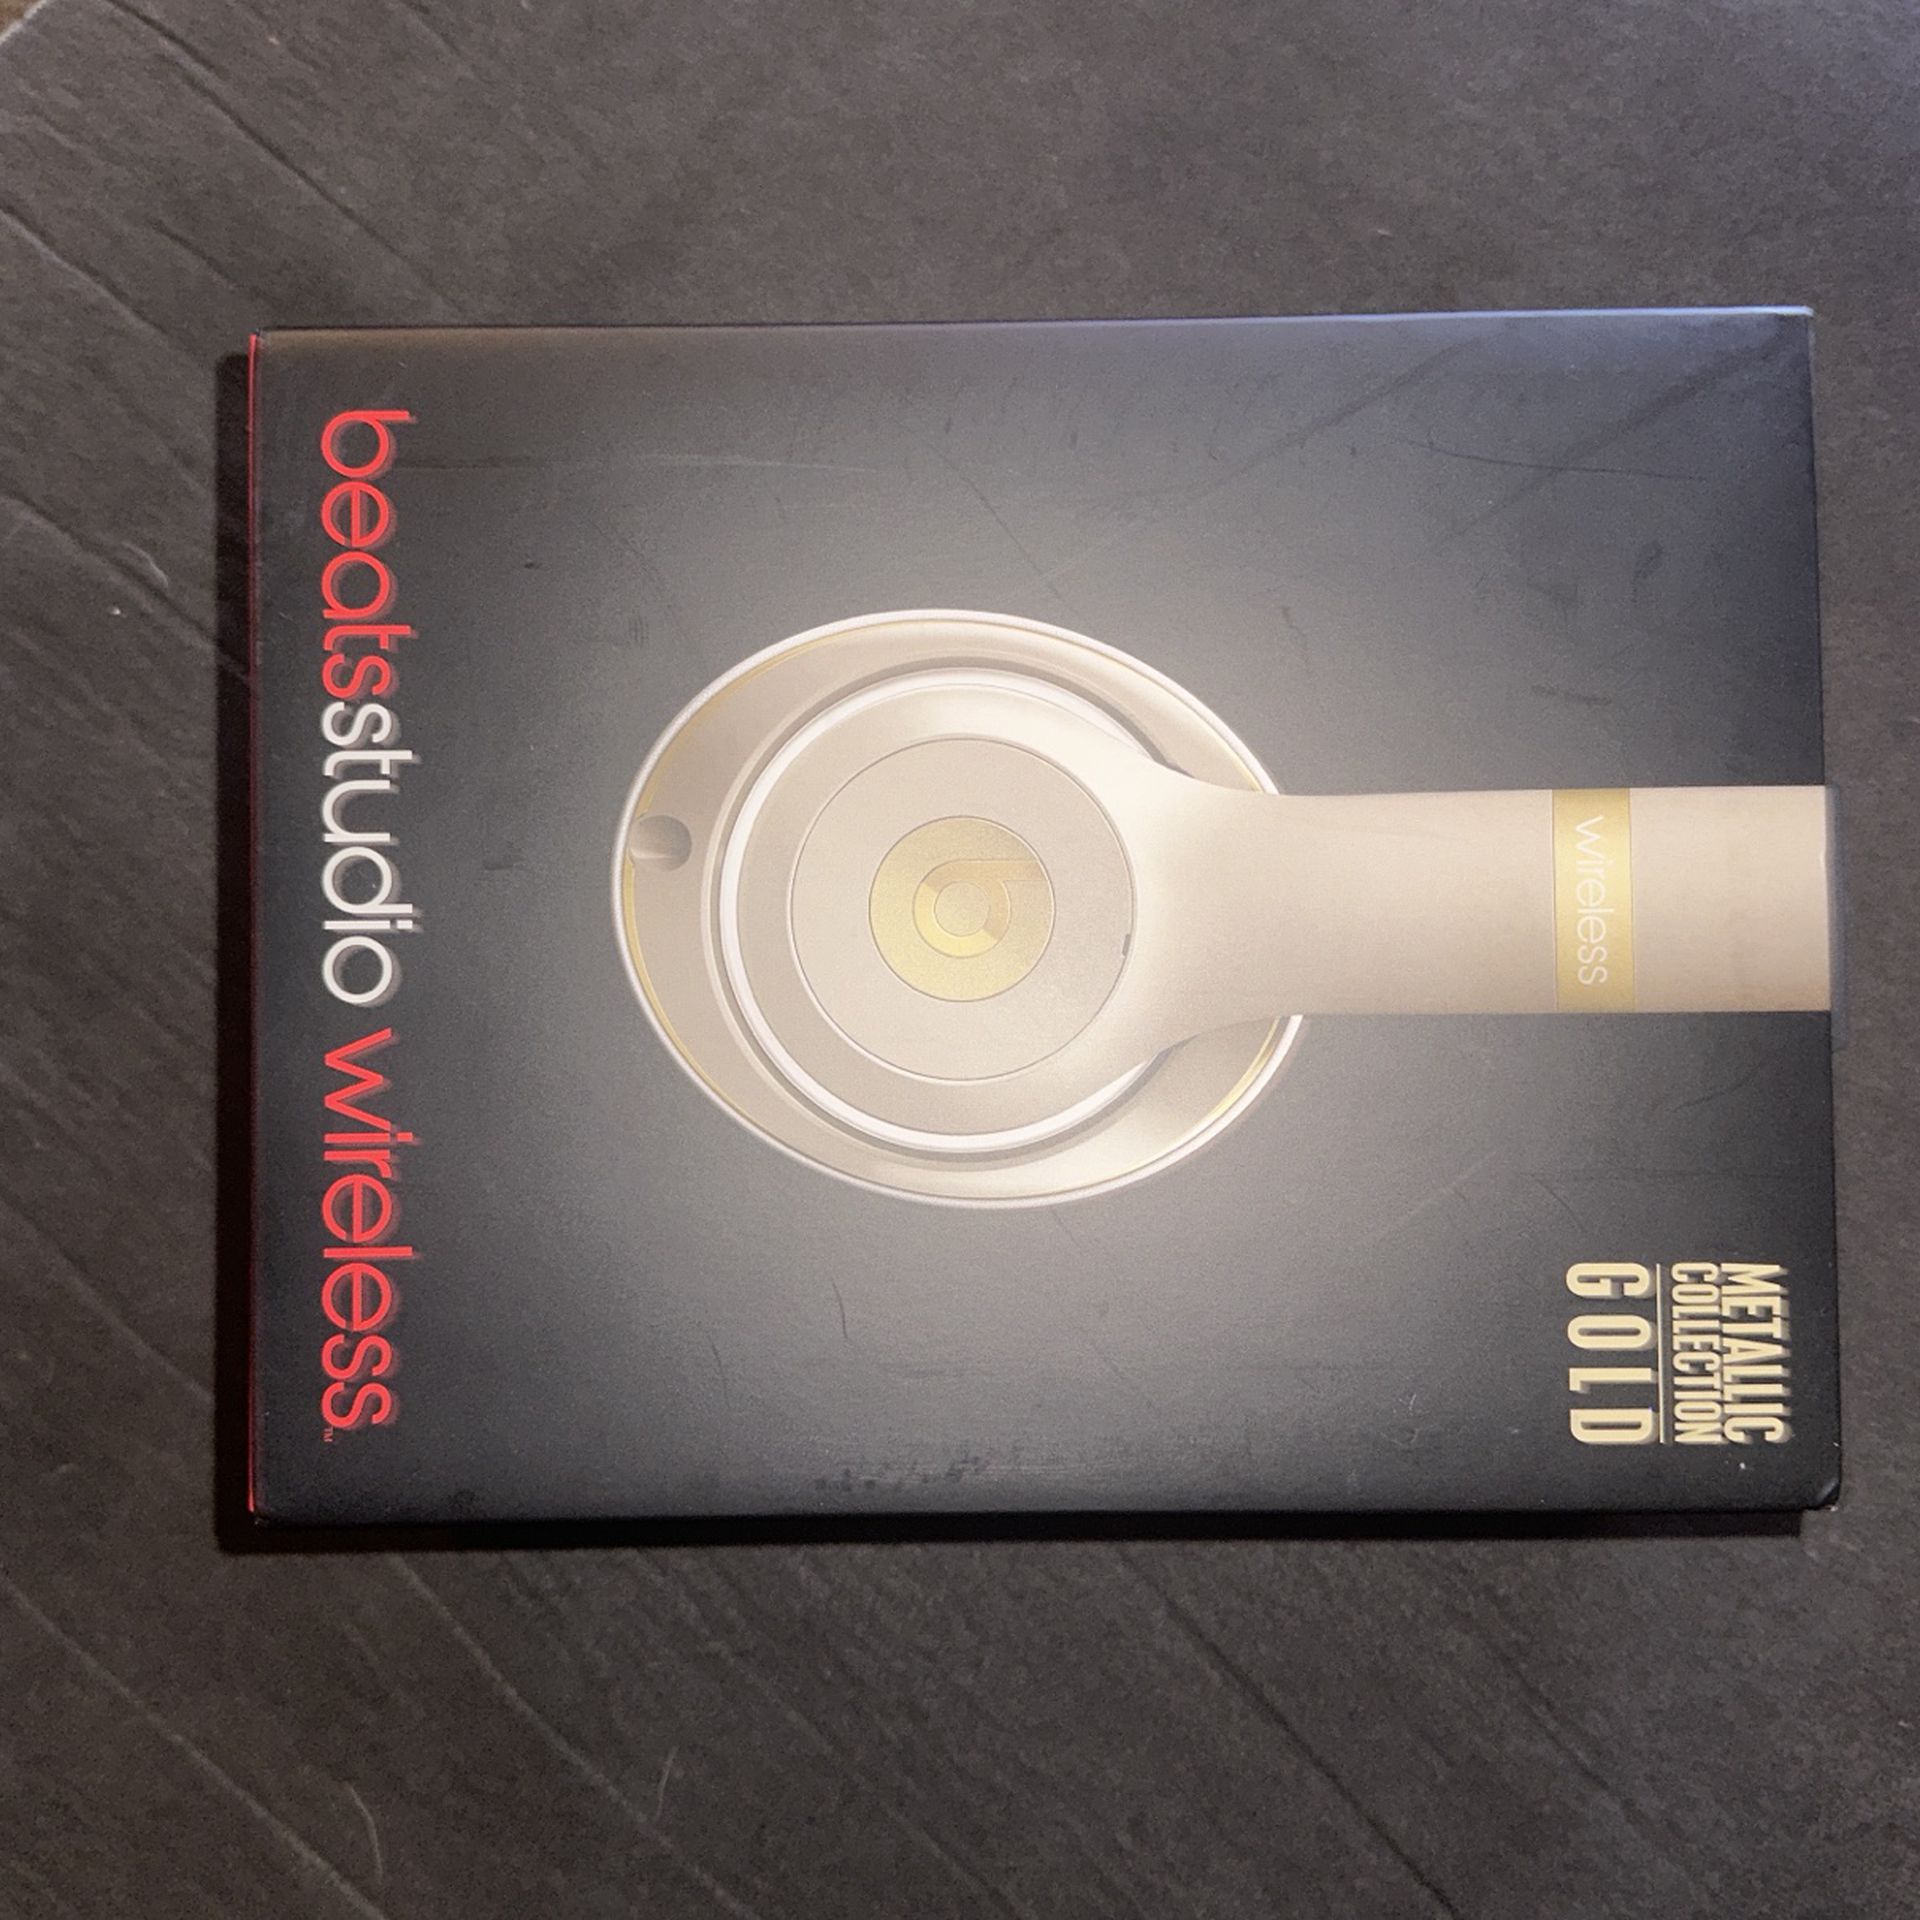 Metallic Gold Beats Studio 2 Headphones